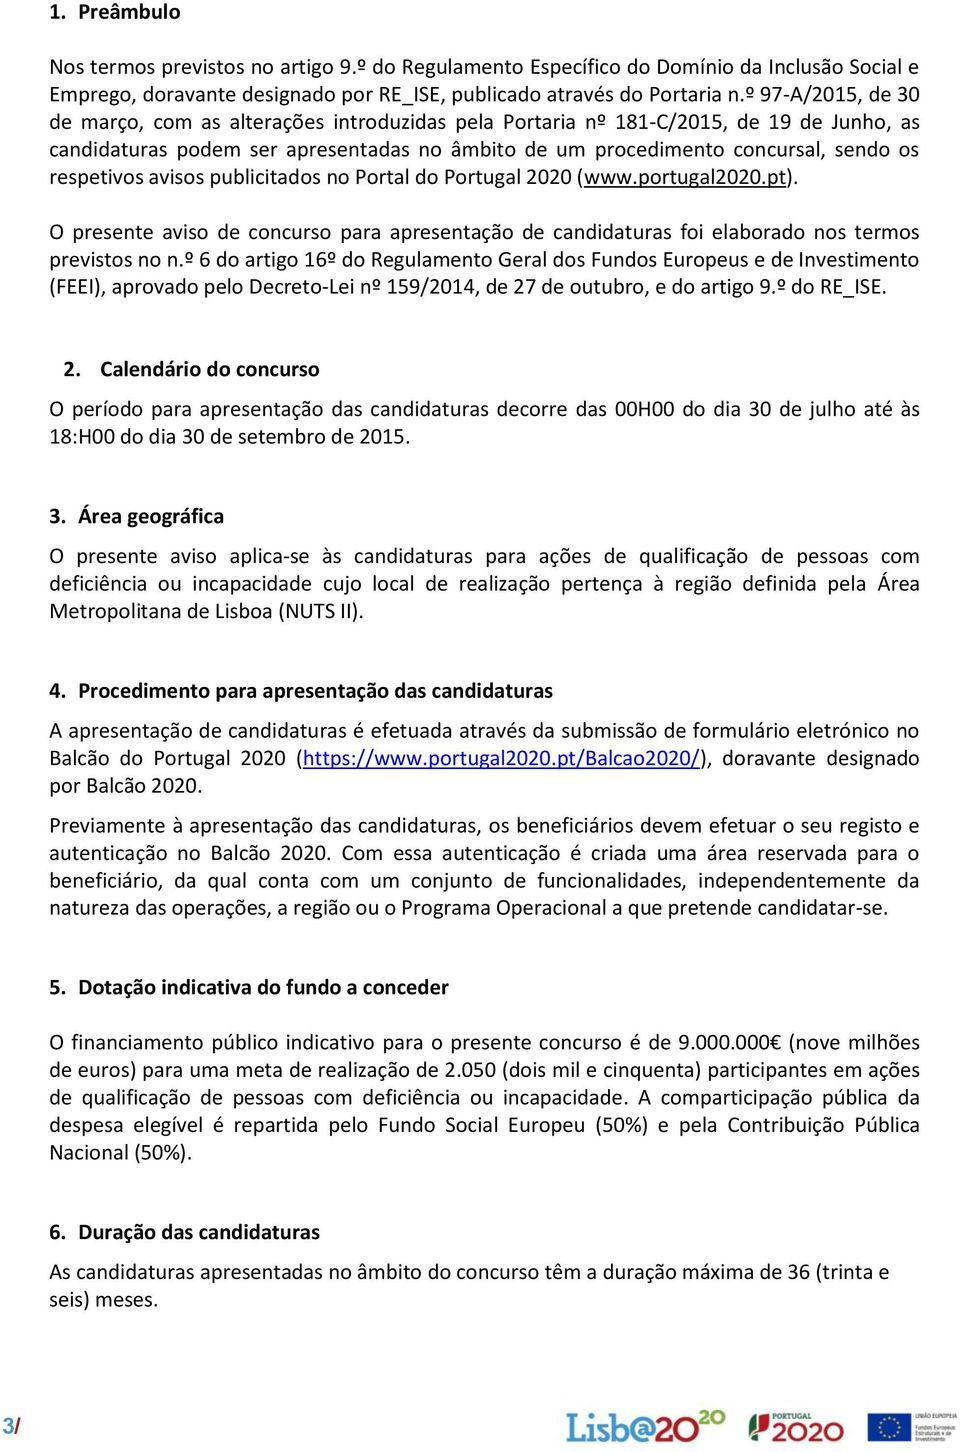 respetivos avisos publicitados no Portal do Portugal 2020 (www.portugal2020.pt). O presente aviso de concurso para apresentação de candidaturas foi elaborado nos termos previstos no n.